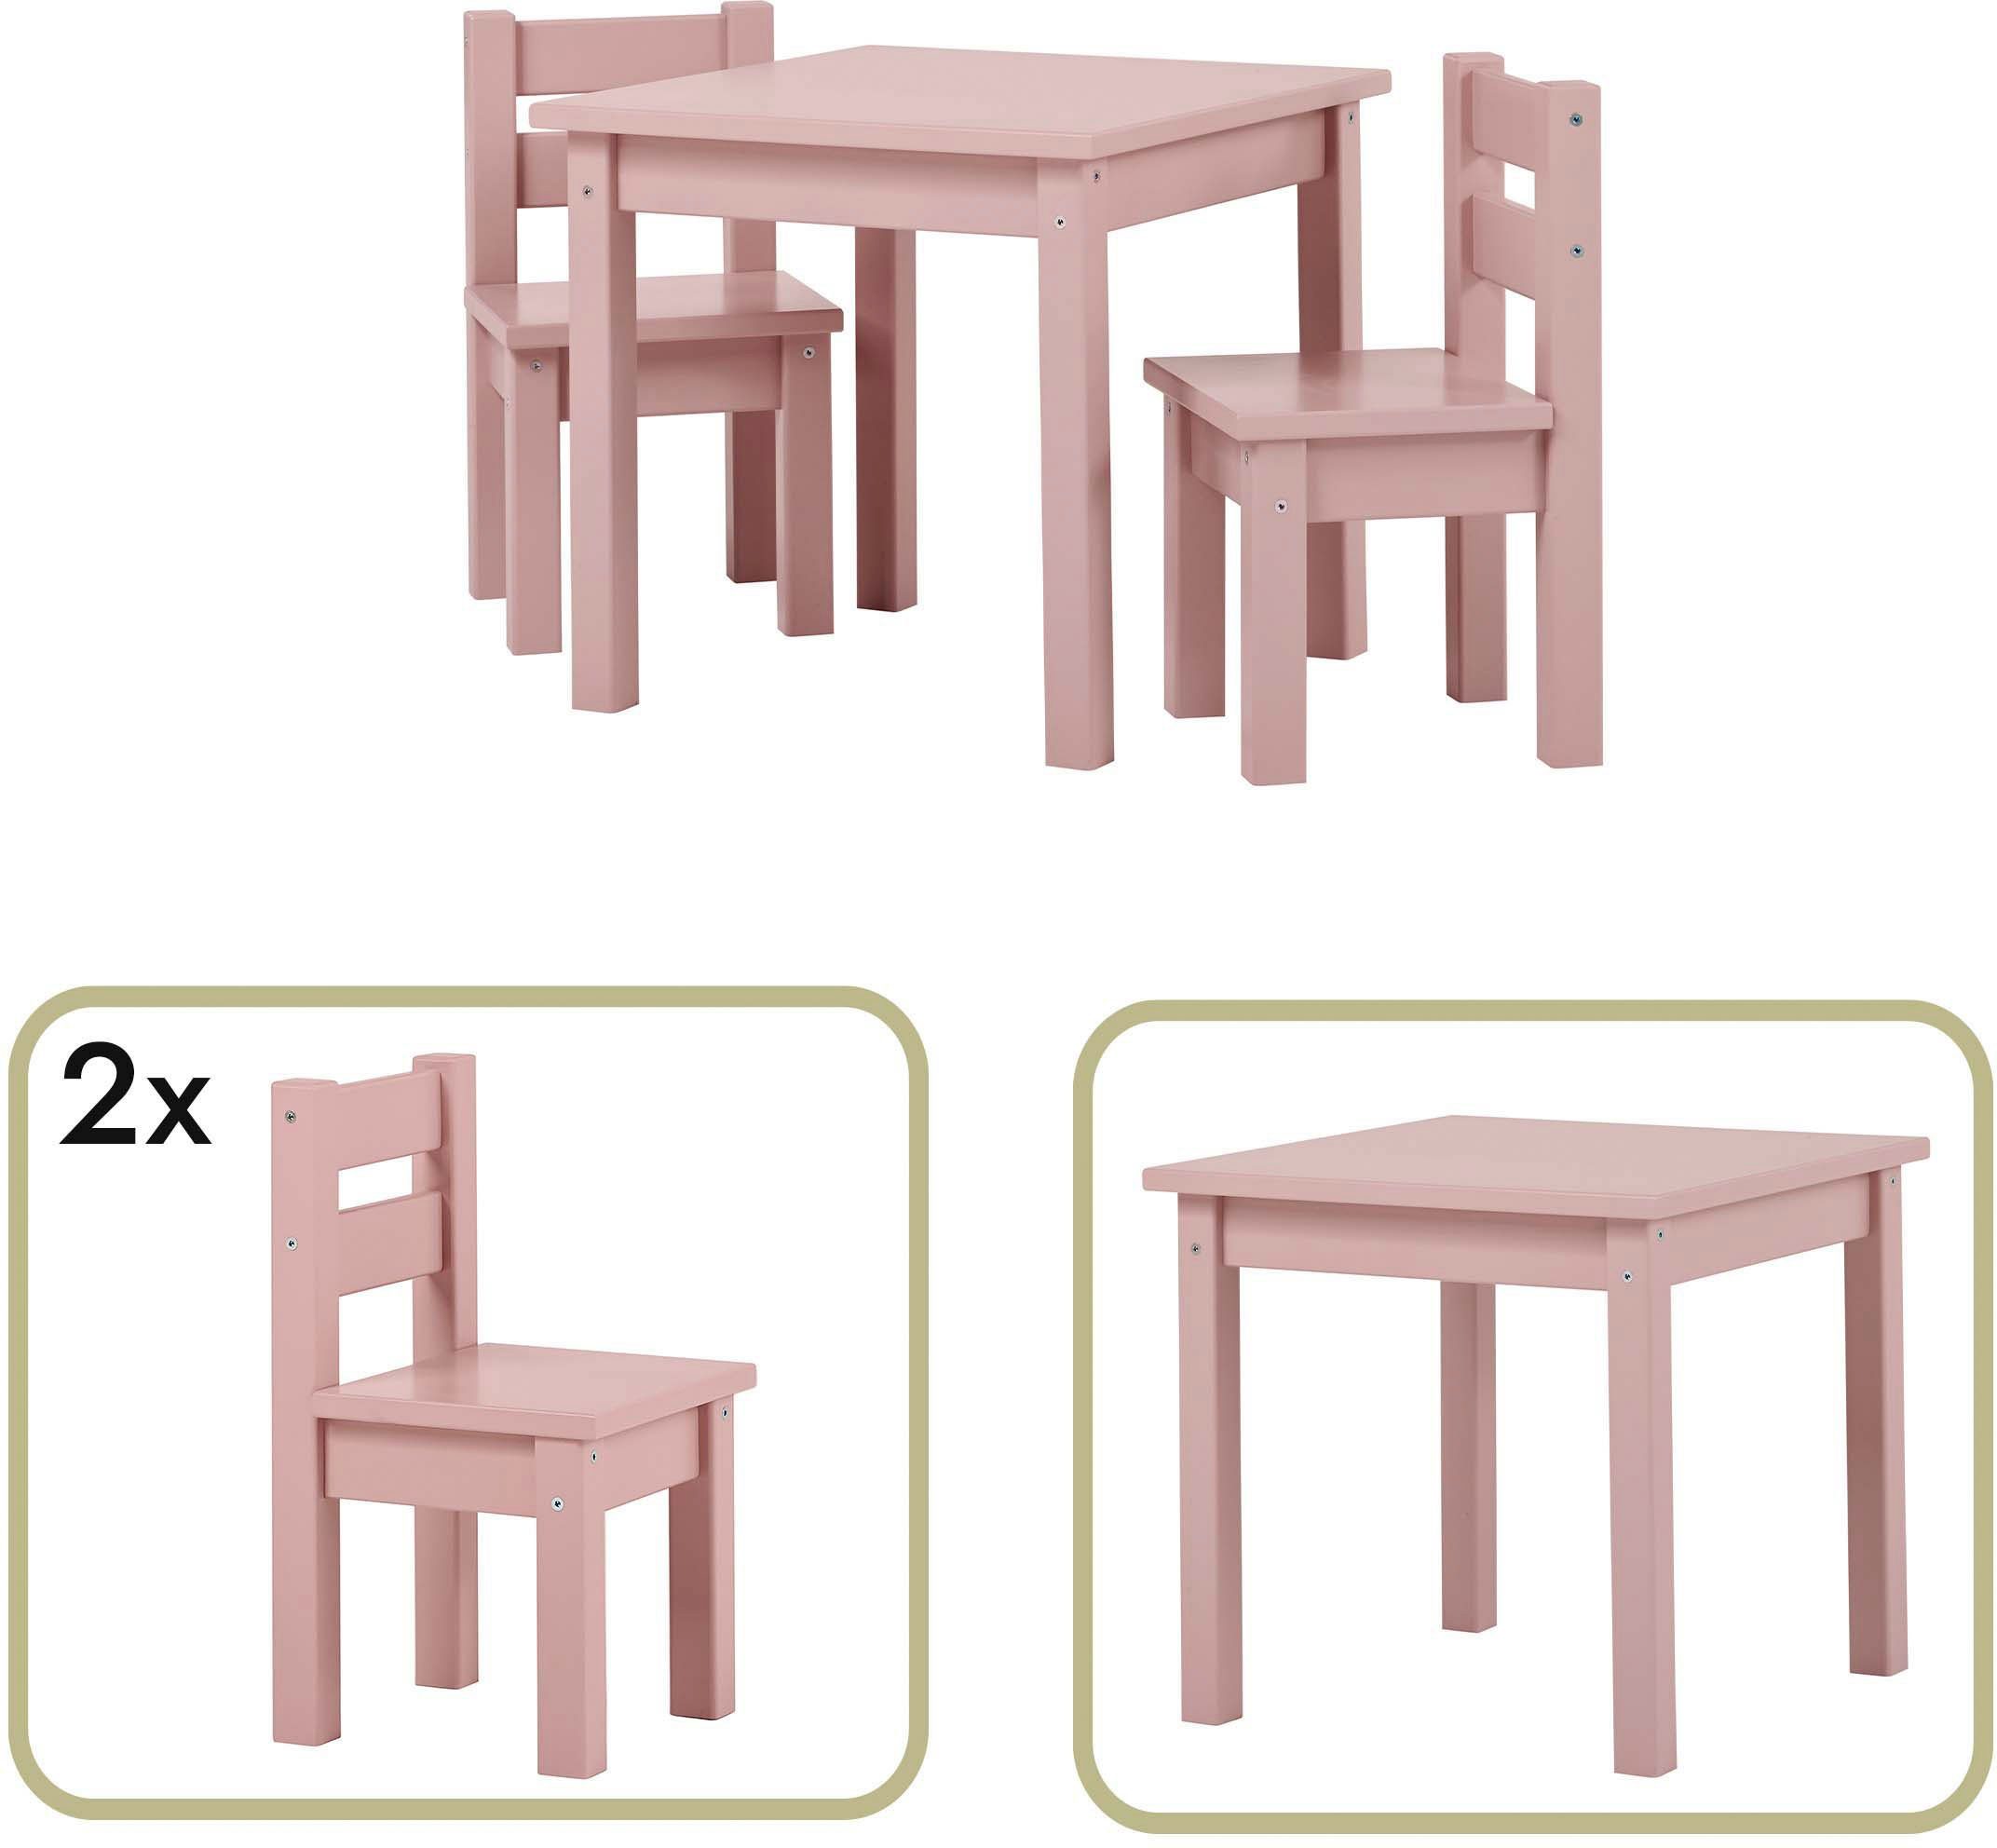 Farben, MADS 3-tlg., in 2 Hoppekids Kindersitzgruppe, 1 Stühlen vielen (Set, Tisch, Stühle), zwei mit Kindersitzgruppe hellrosa